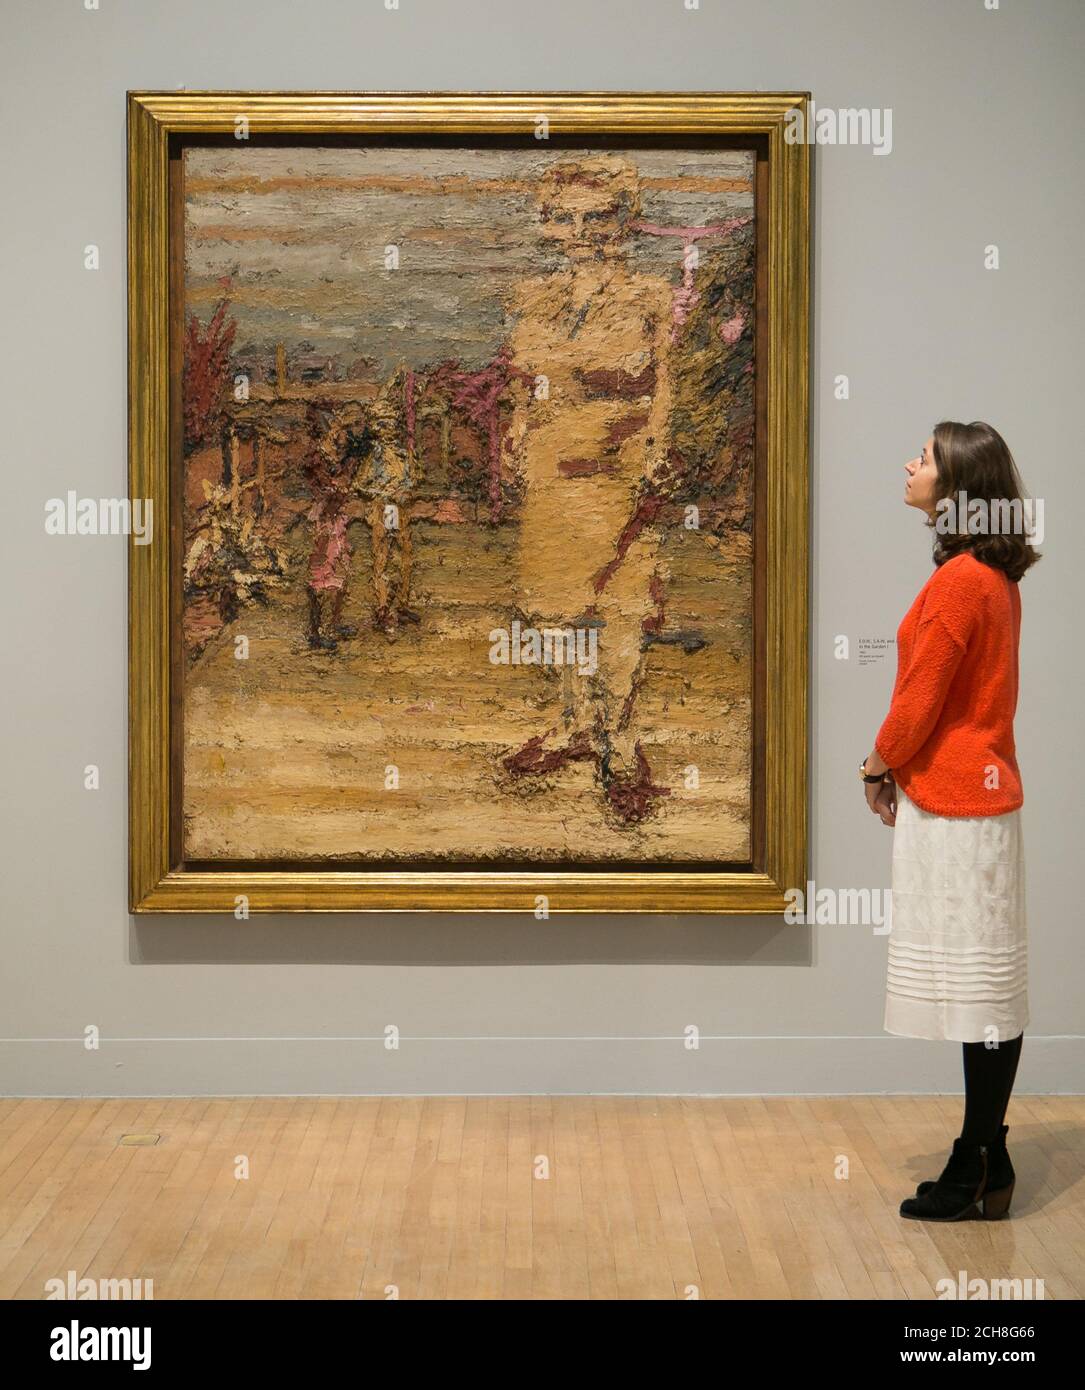 Un employé de la galerie regarde un tableau de Frank Auerbach appelé 'E.O.W., S.A.W, et J.J.W. in the Garden I', 1963, lors d'une photocall pour une nouvelle exposition de l'artiste britannique au Tate Britain à Londres. Banque D'Images